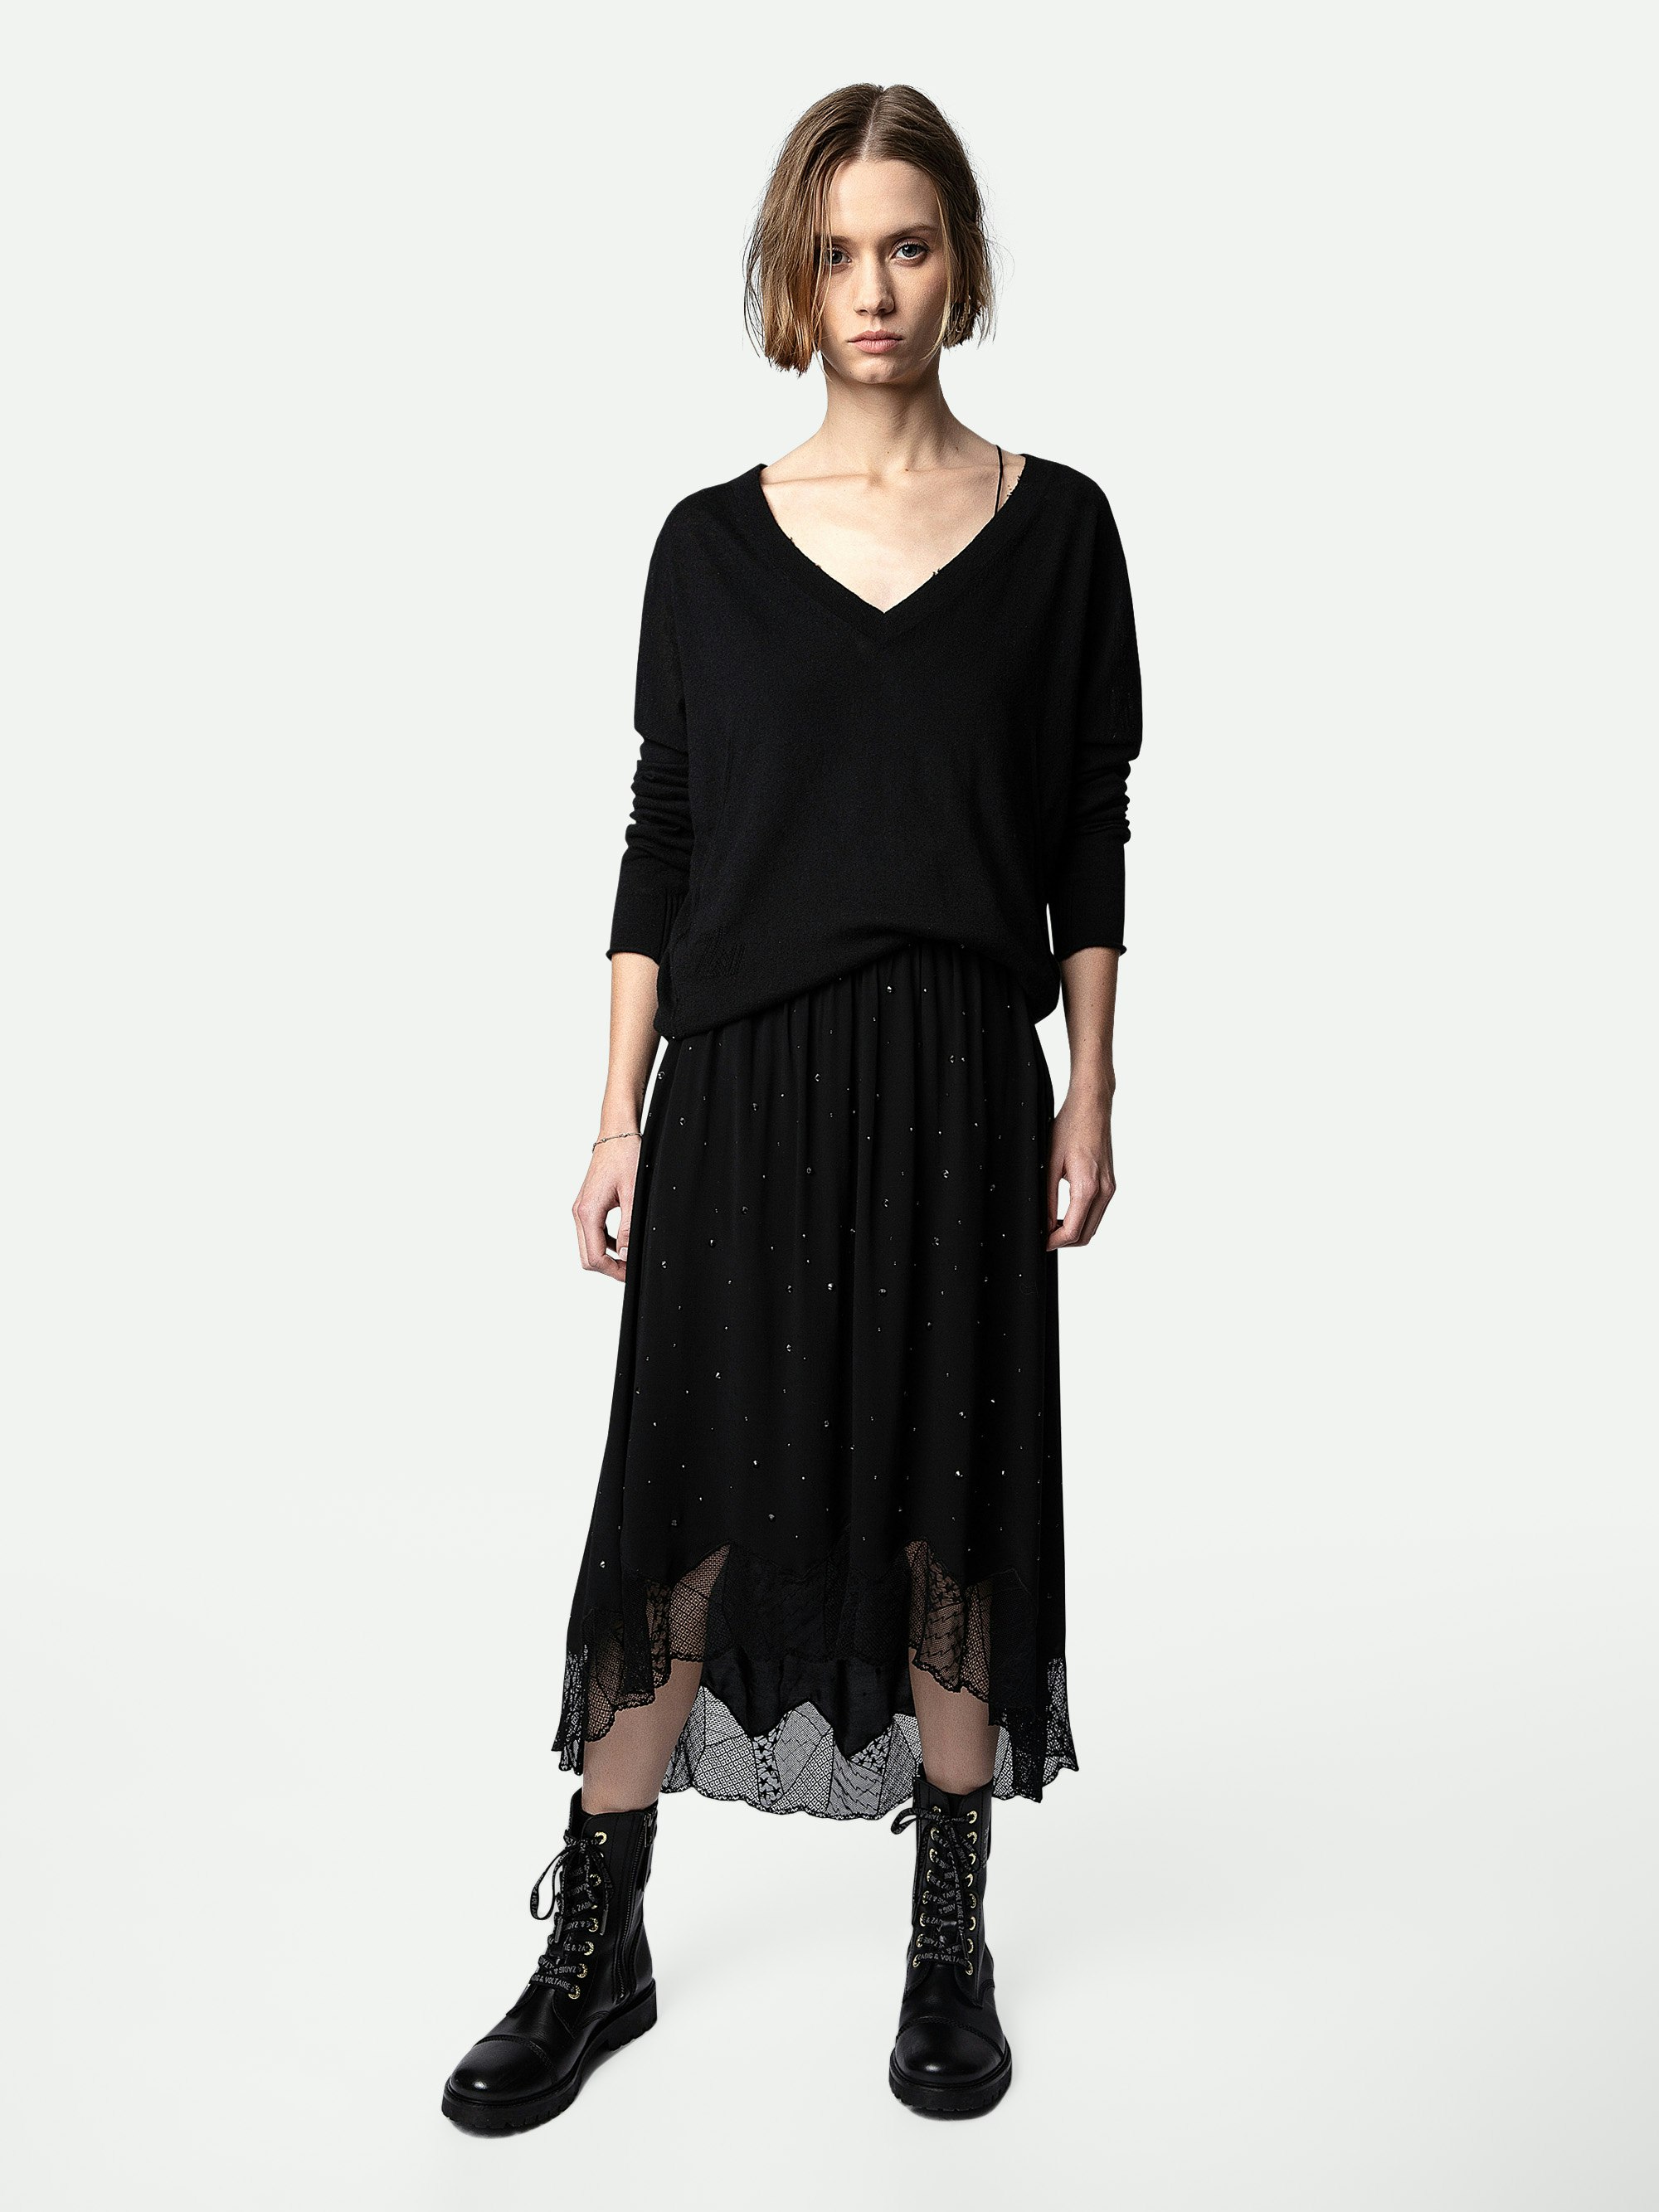 Joslin Strass Skirt - Women’s mid-length black asymmetric skirt with crystal embellishment